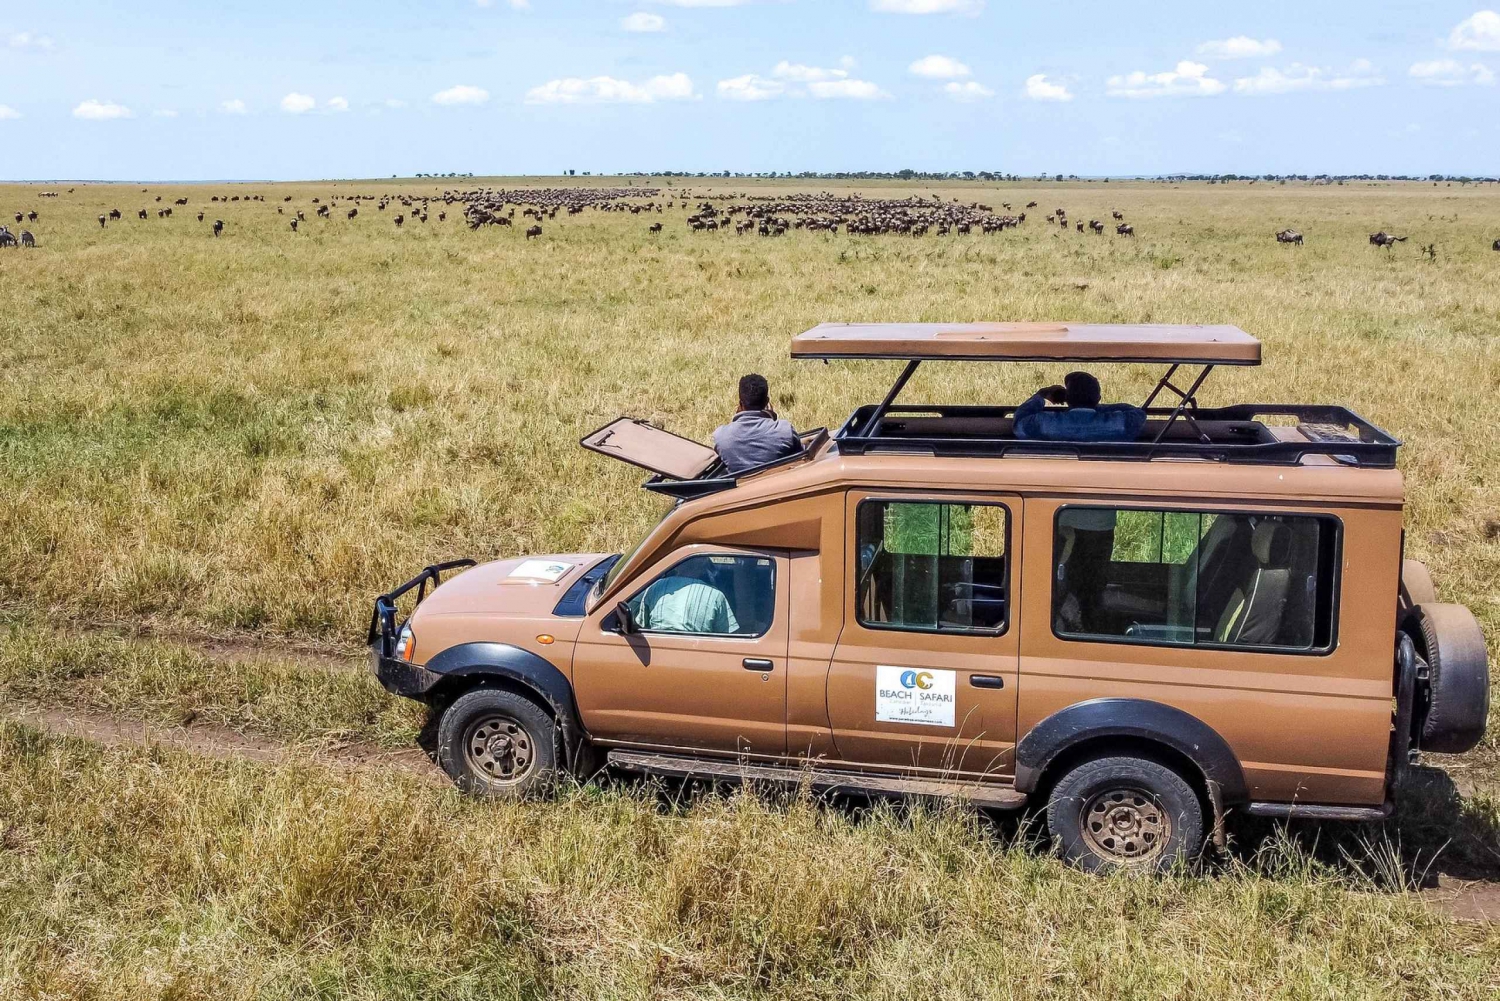 Från Arusha: Kör och flyg tillbaka Safari Tarangire & Serengeti